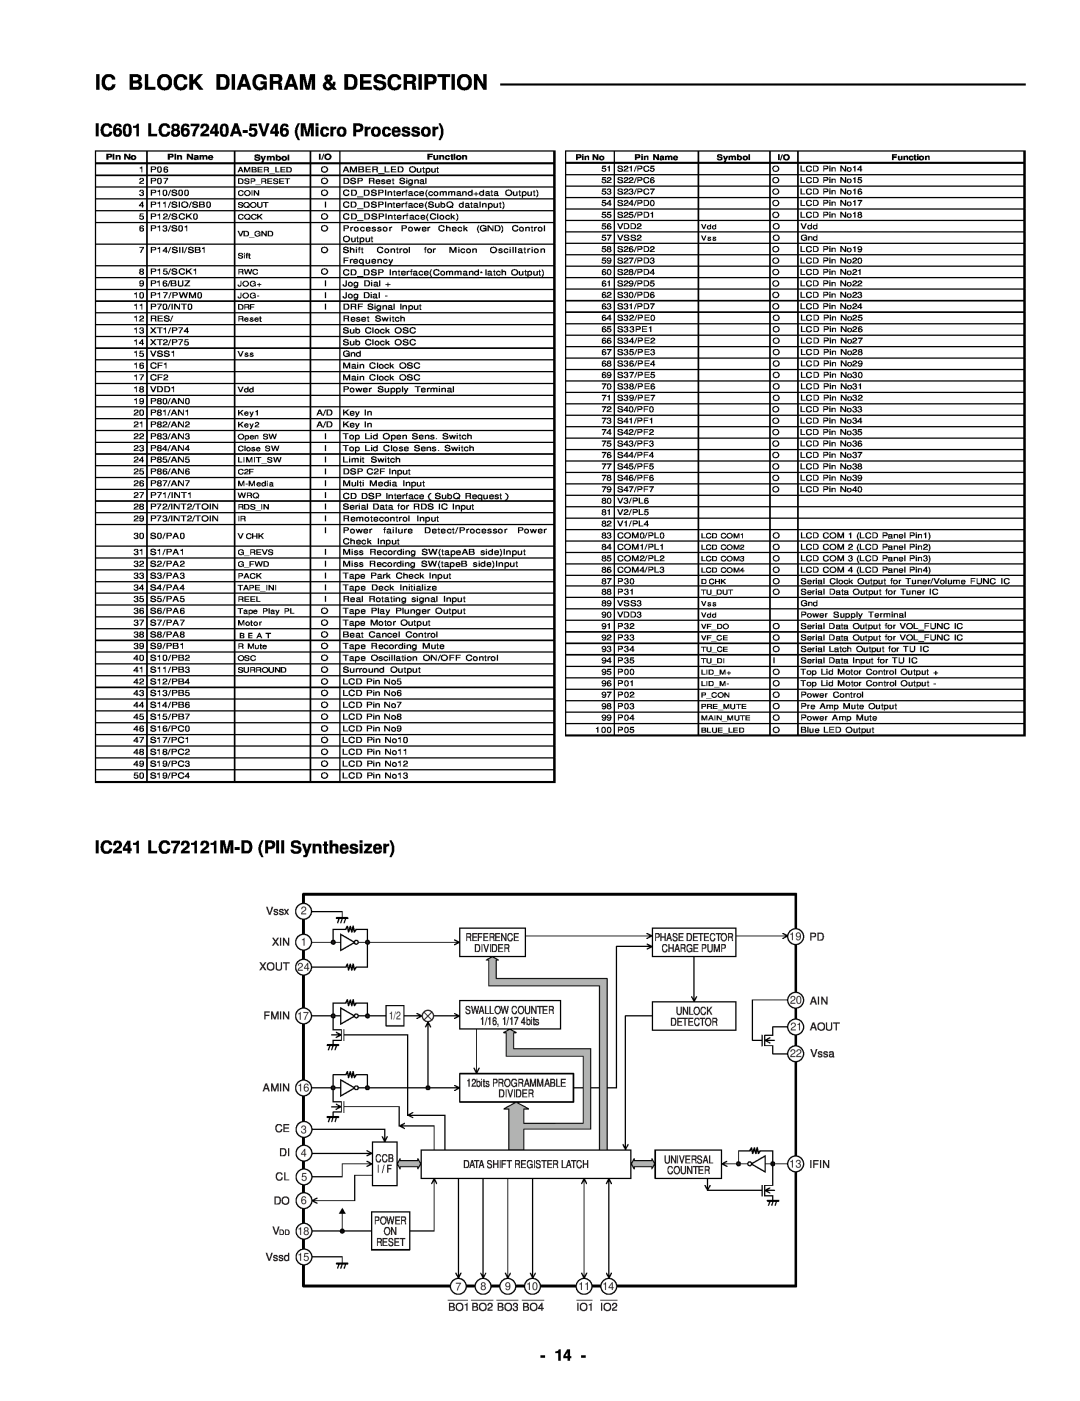 Sanyo DC-DA370 IC601 LC867240A-5V46Micro Processor, IC241 LC72121M-DPll Synthesizer, Ic Block Diagram & Description 